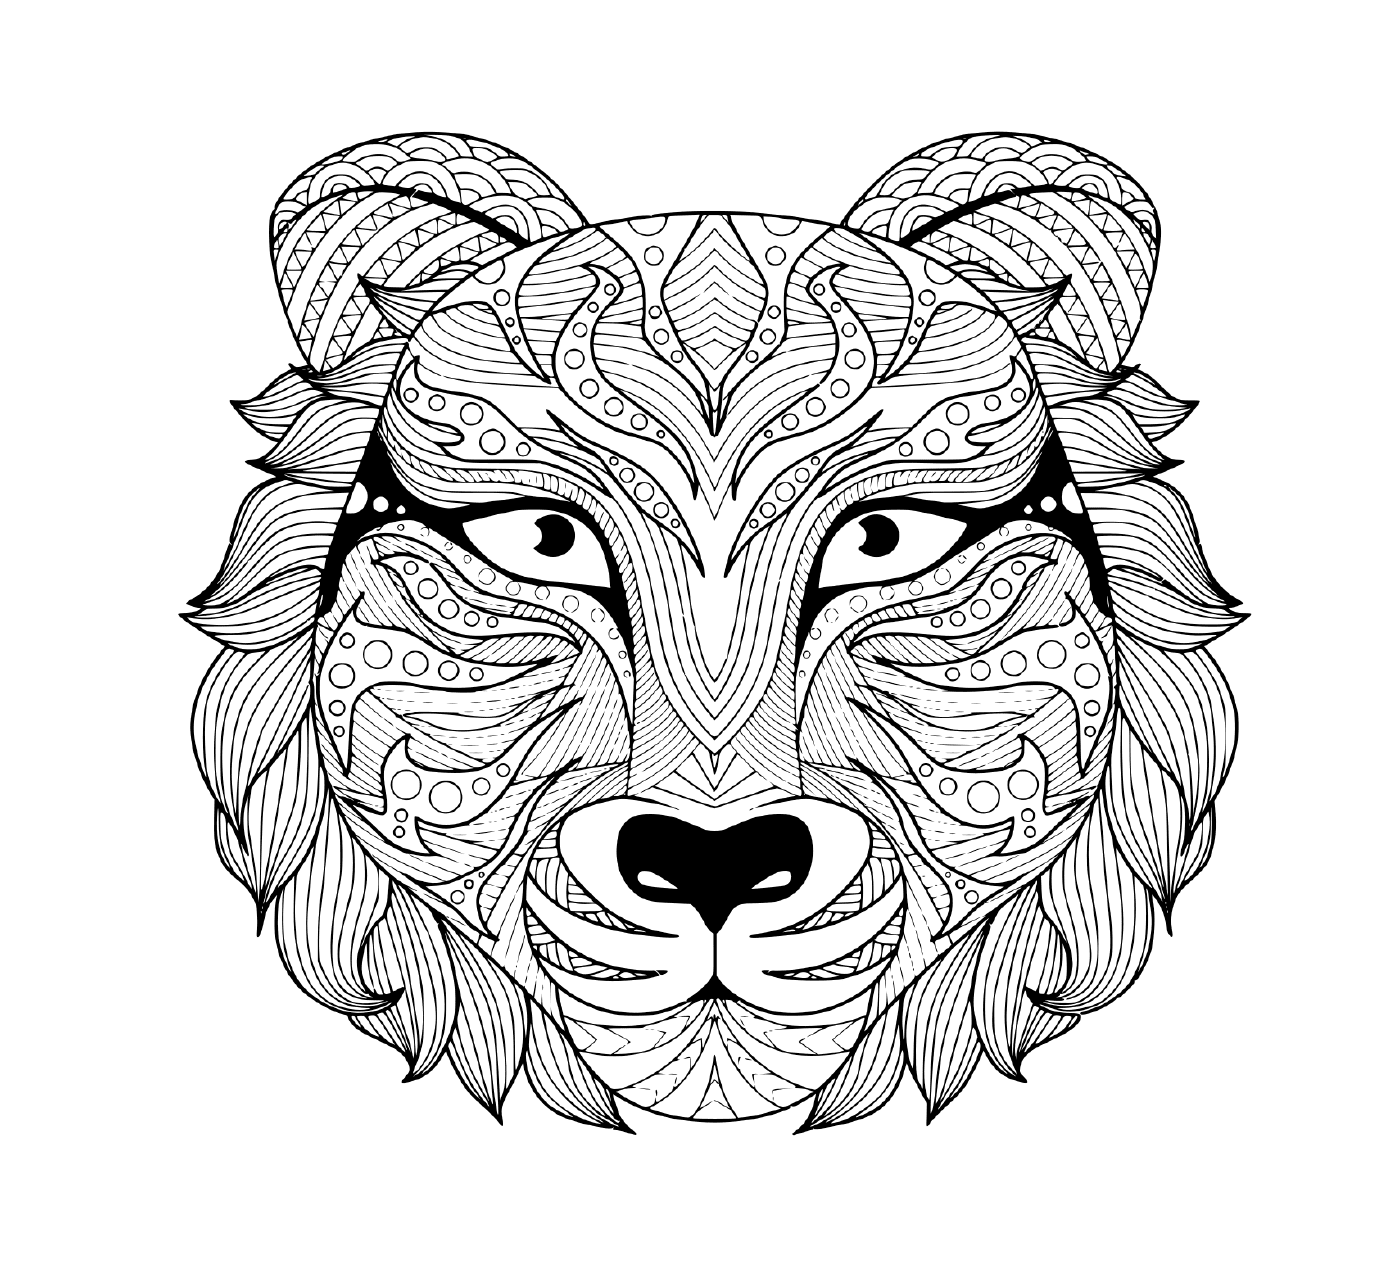  una representación tatuada de una cabeza de tigre adulto con ojos coloridos 